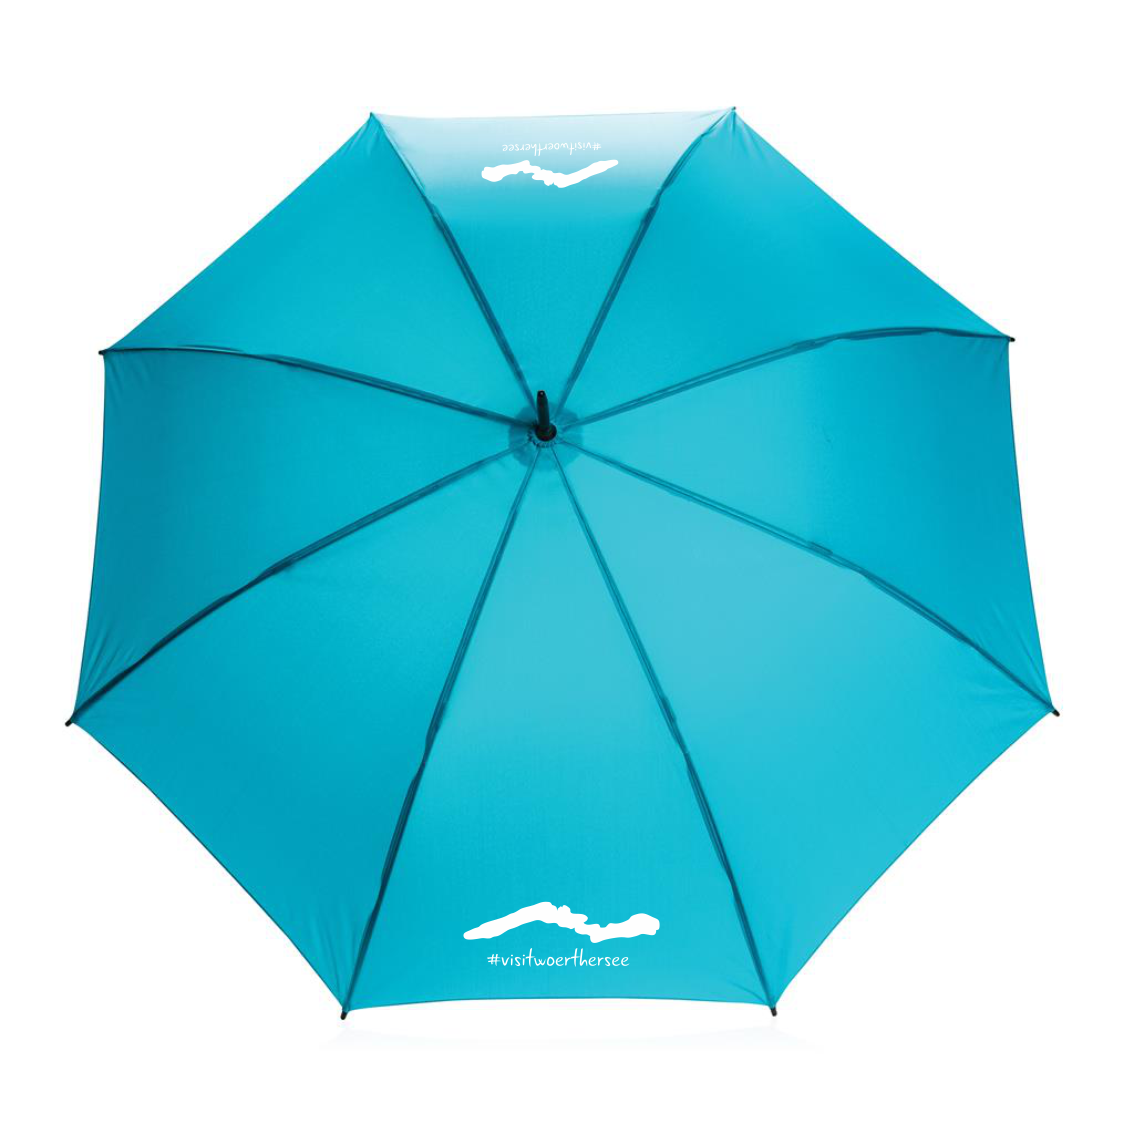 Regenschirm #visitwörthersee